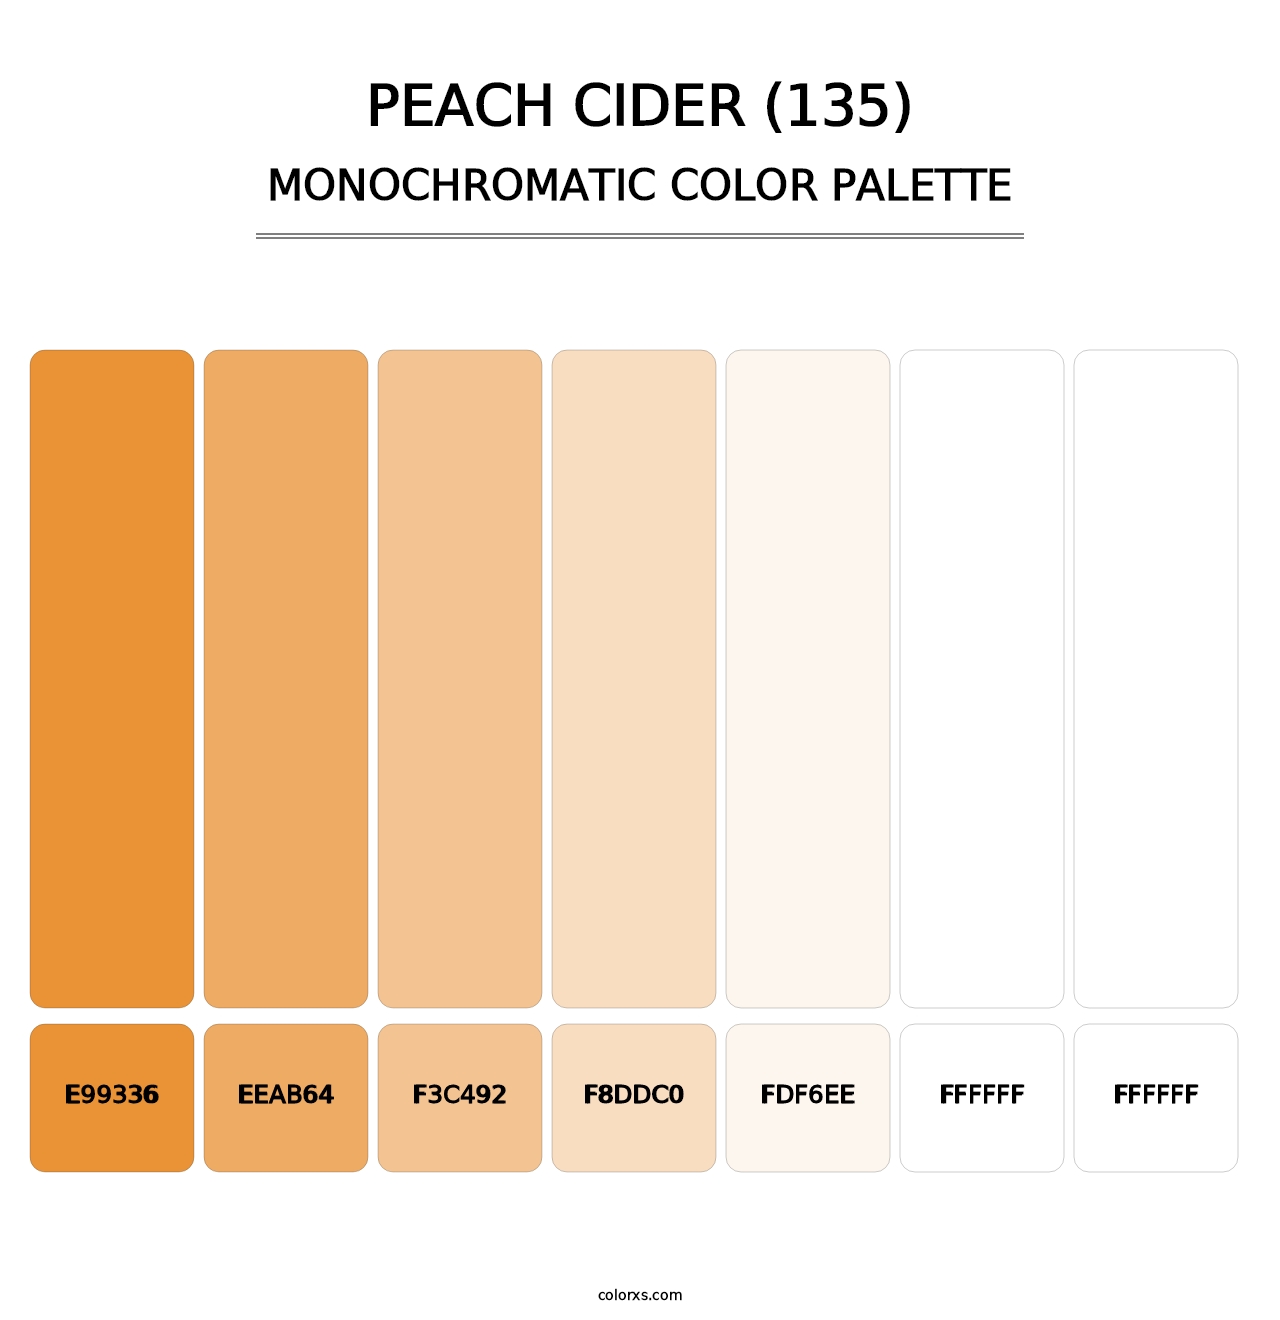 Peach Cider (135) - Monochromatic Color Palette